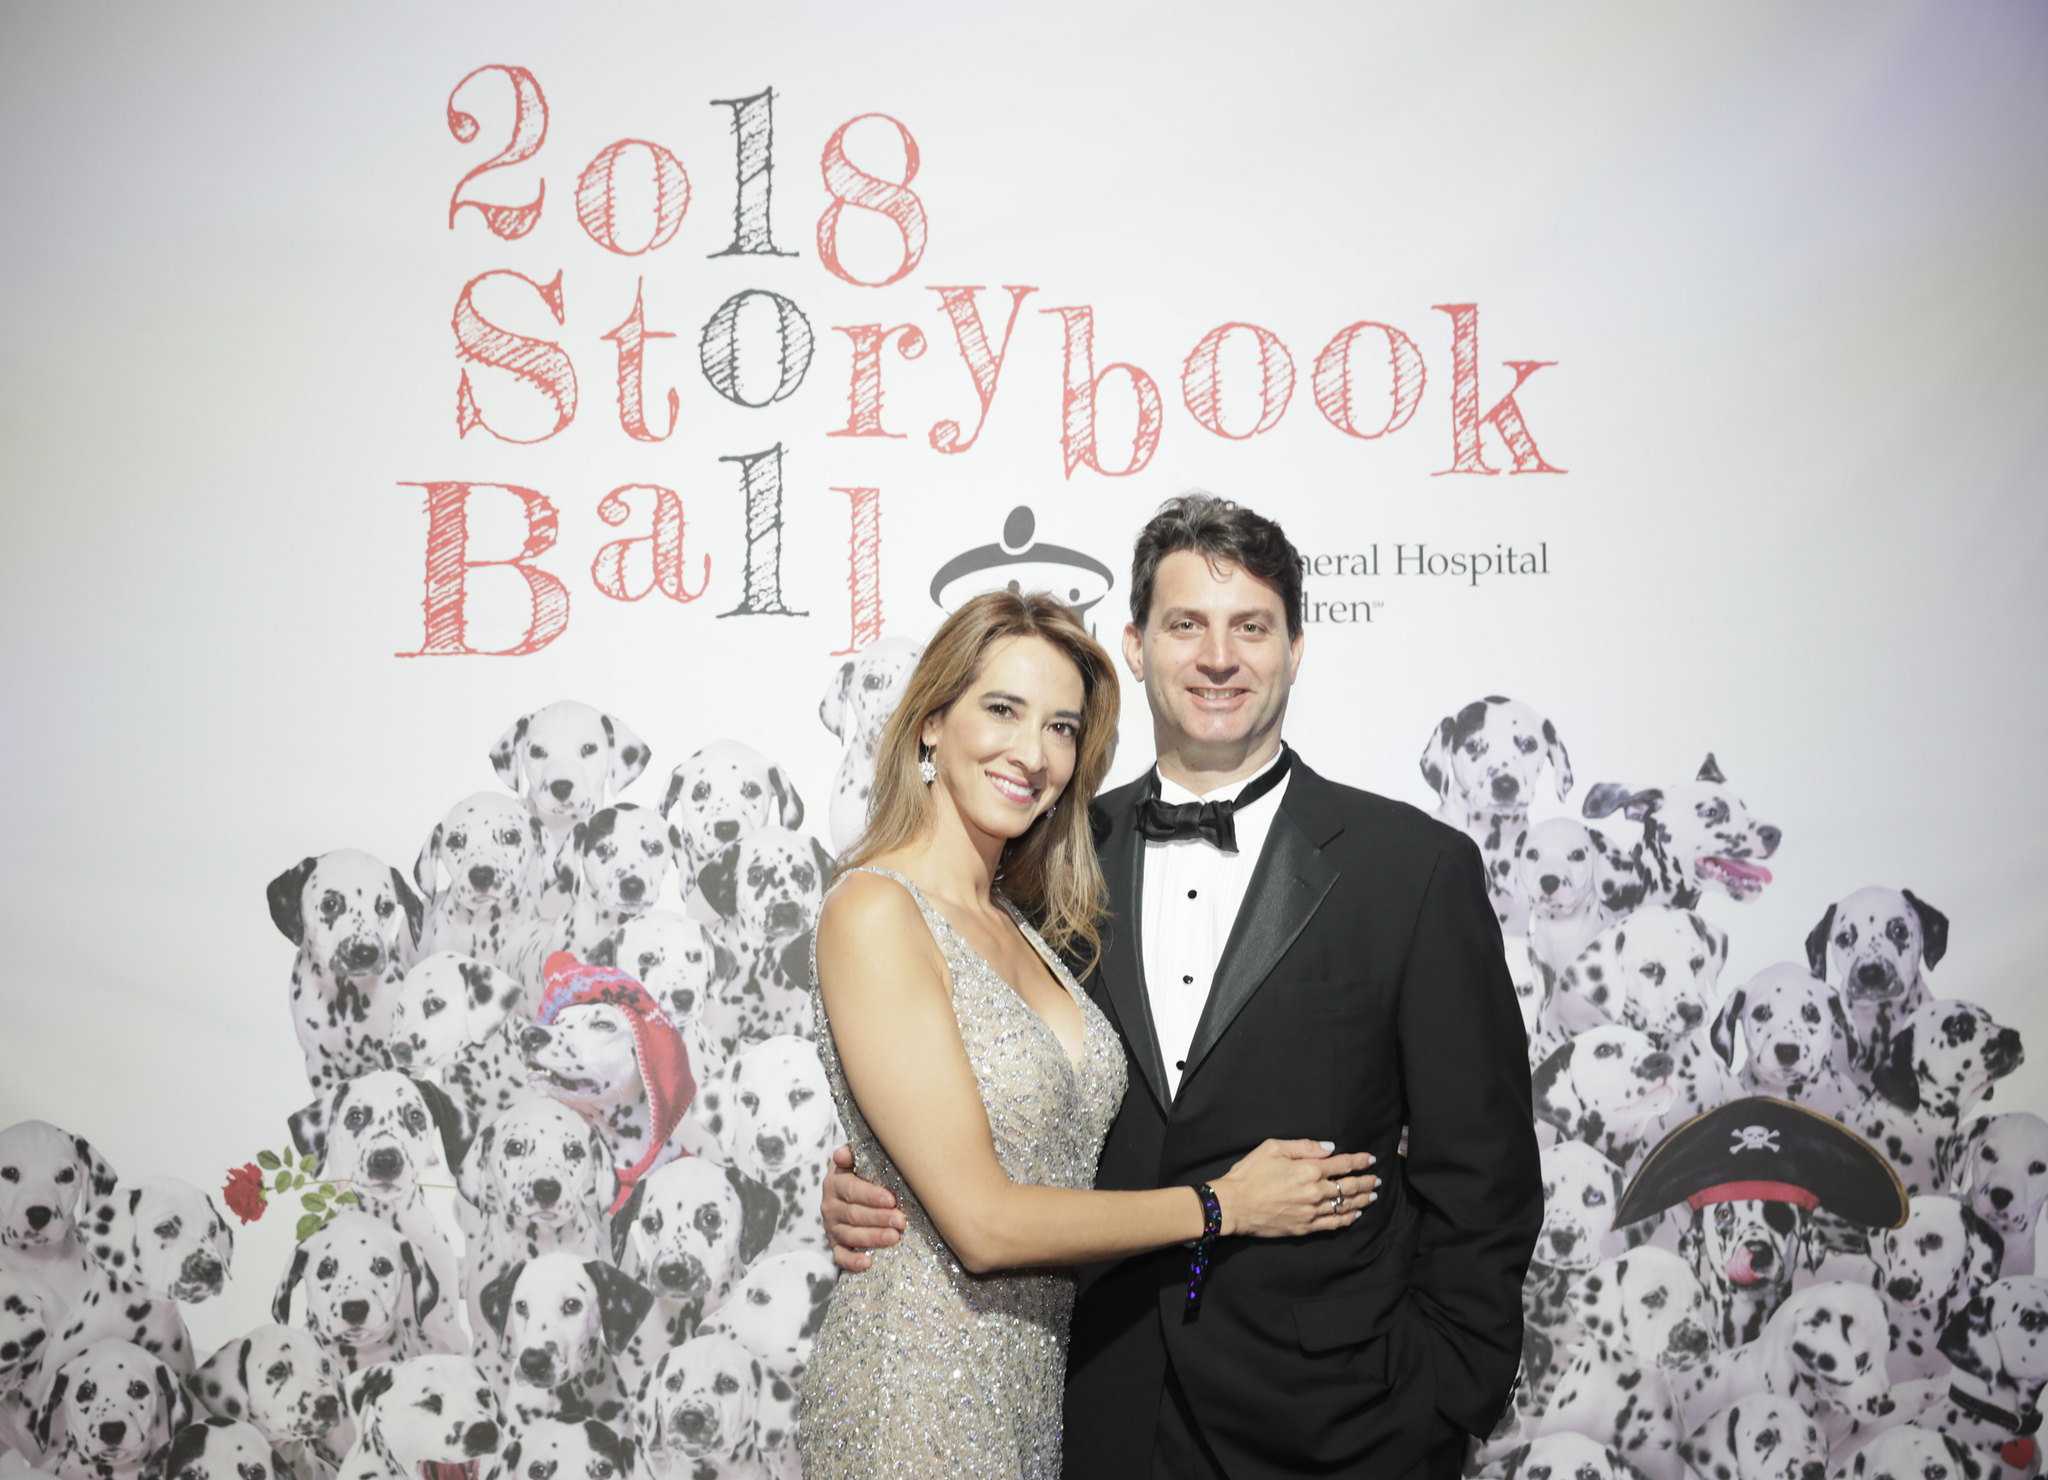 Storybook Ball 2018_Jackie and Graig Fantuzzi_Teuten6066